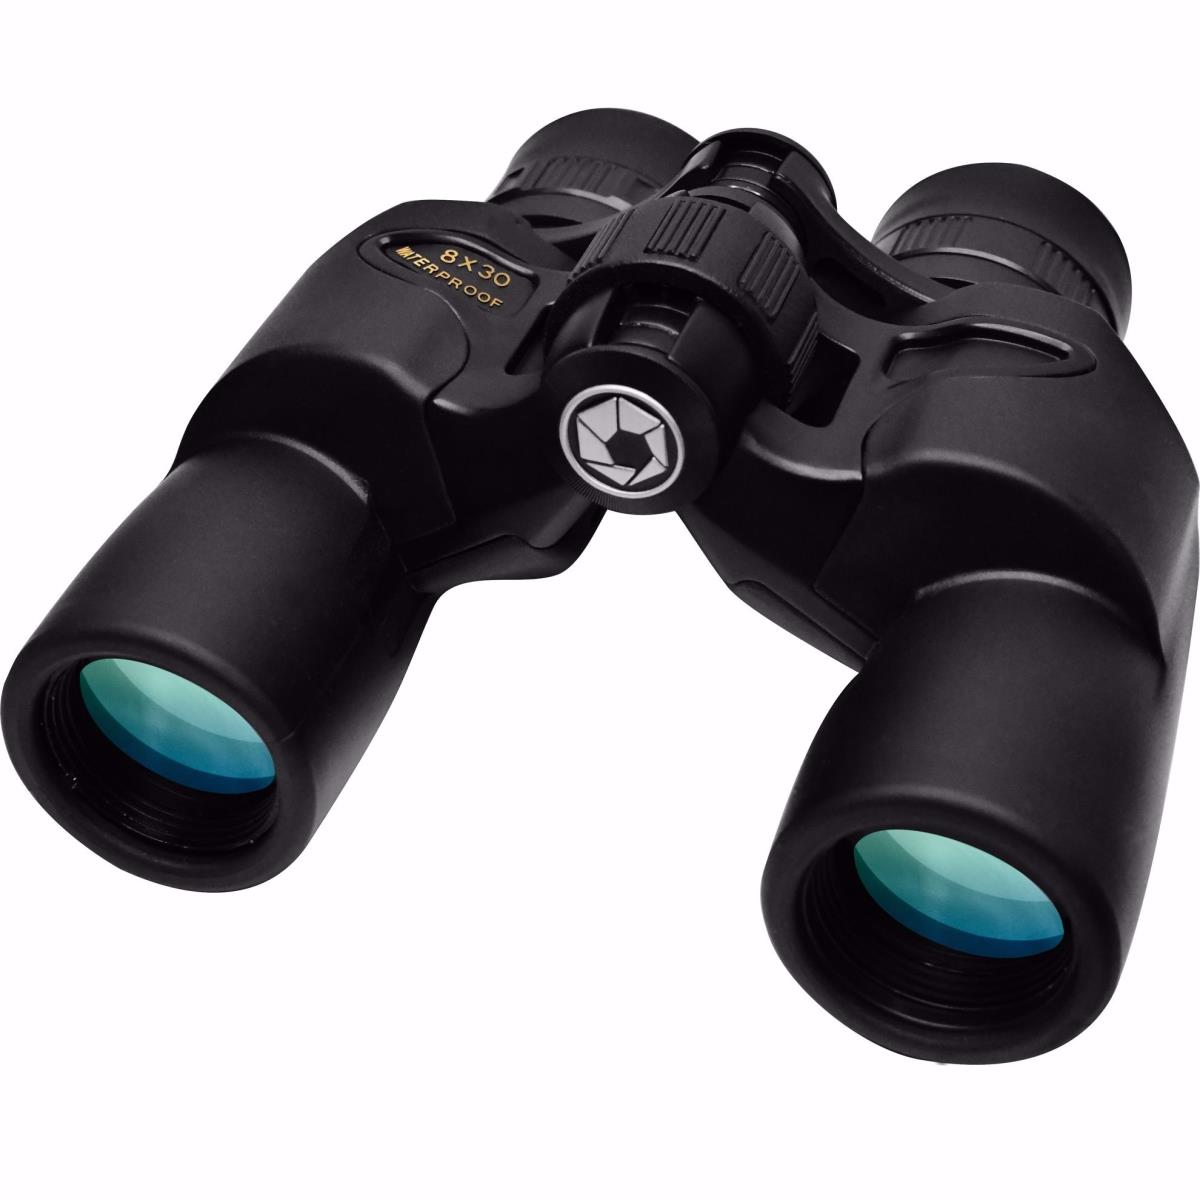 Picture of Barska AB13530 8 x 30 mm Waterproof Crossover Binoculars, Black Matte